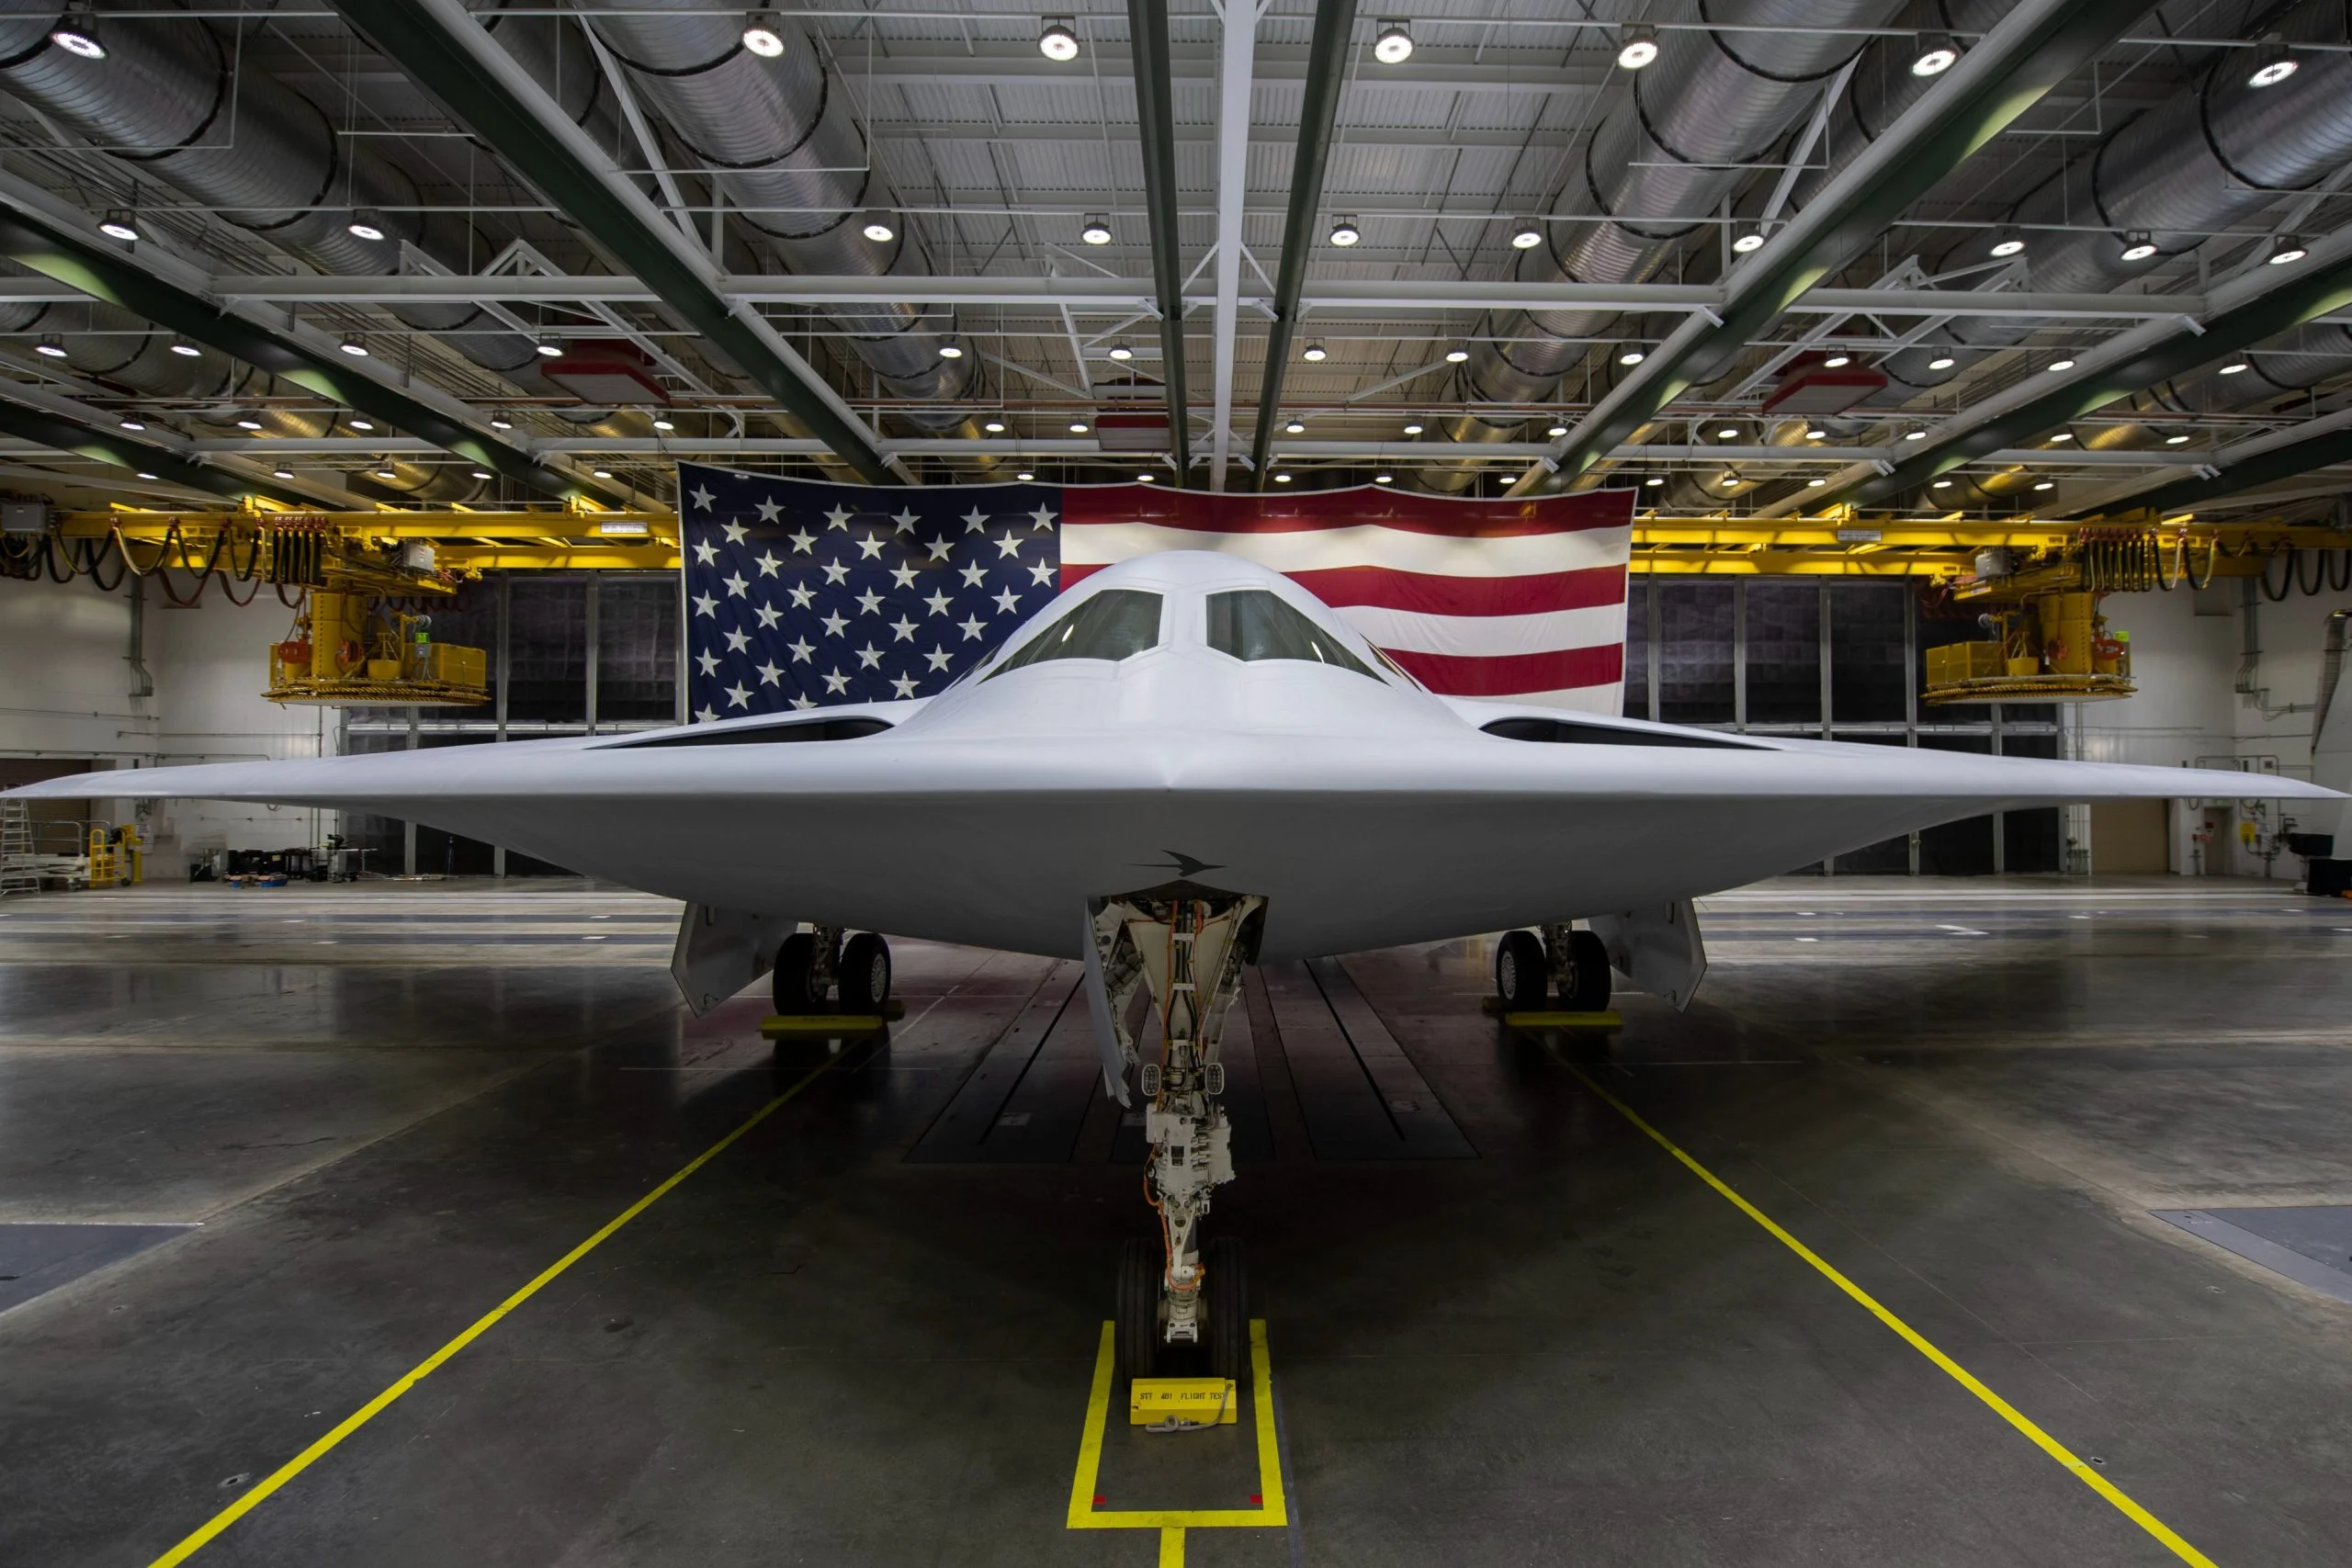 Northrop Grumman може отримати $9 млрд на розробку ядерного бомбардувальника B-21 Raider, винищувача шостого покоління NGAD і МБР Sentinel